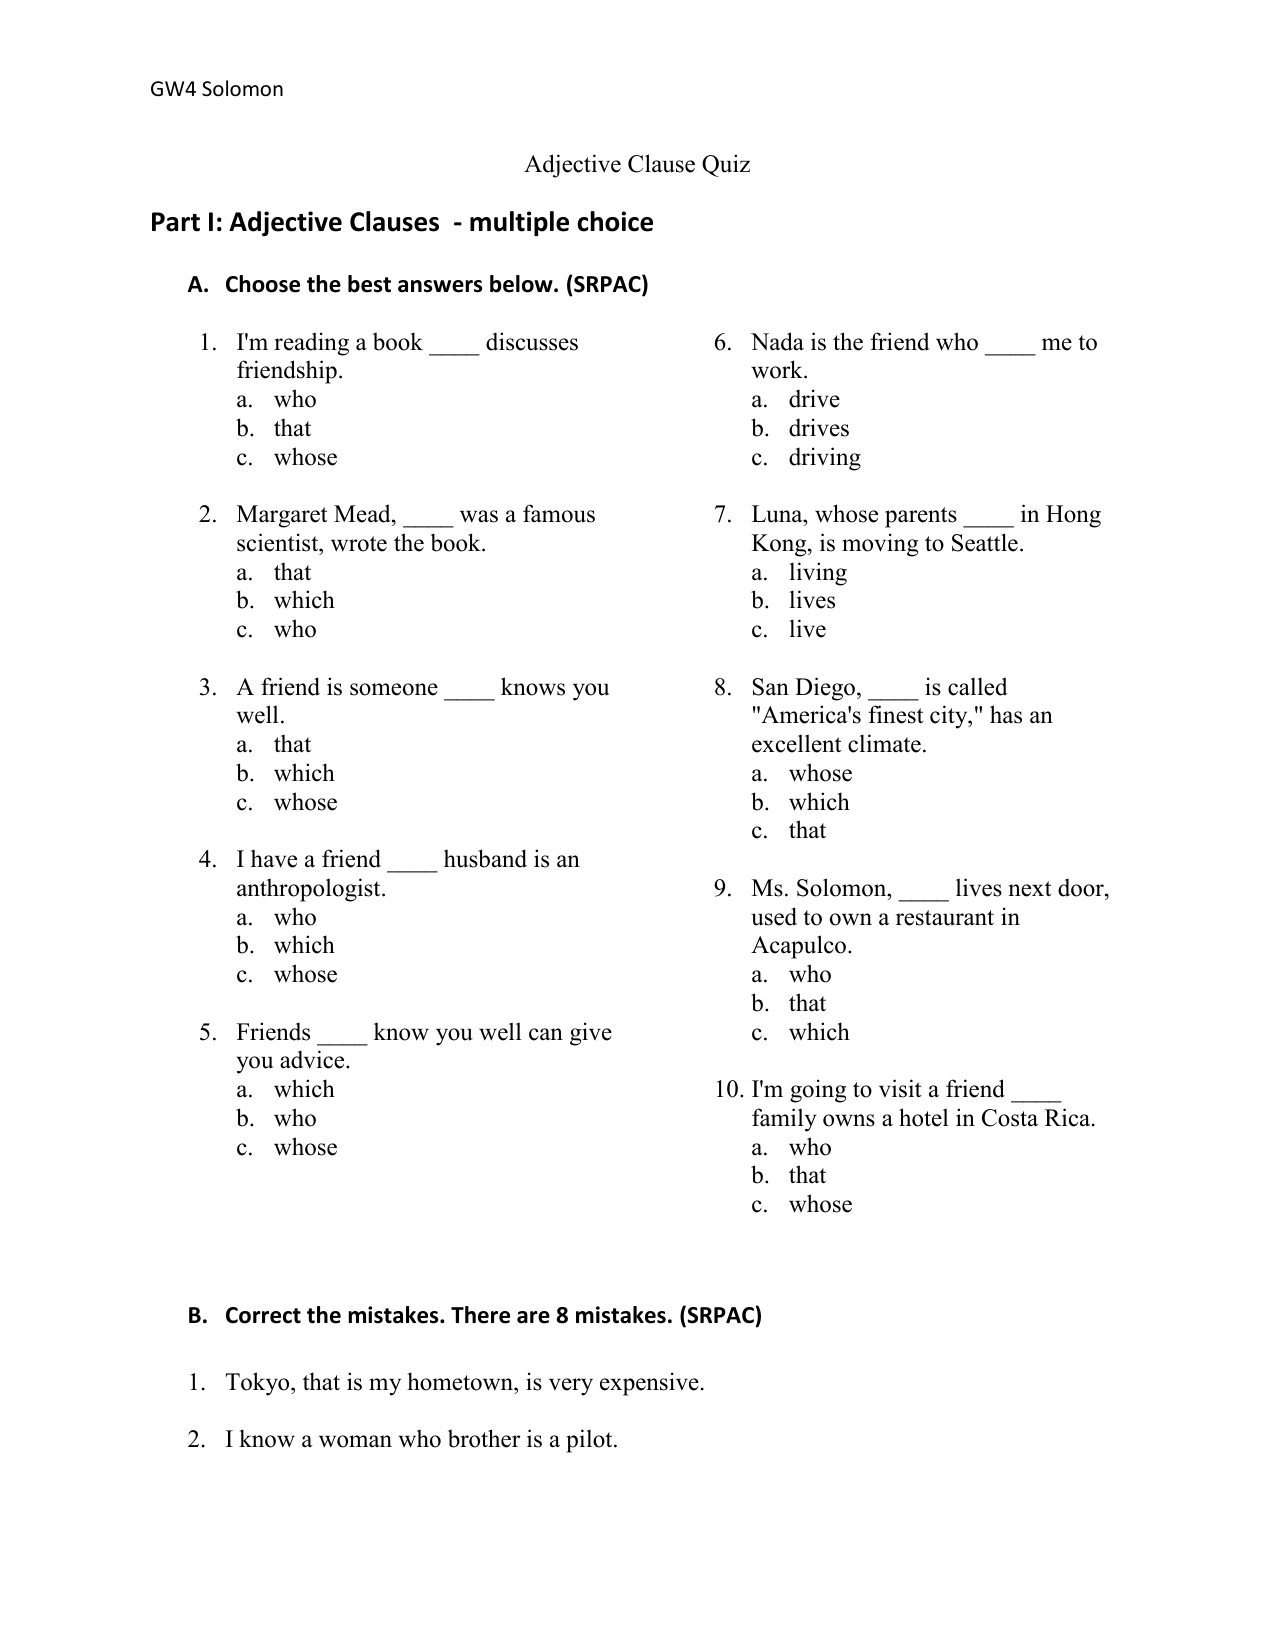 order-of-adjectives-general-grammar-english-esl-worksheets-pdf-doc